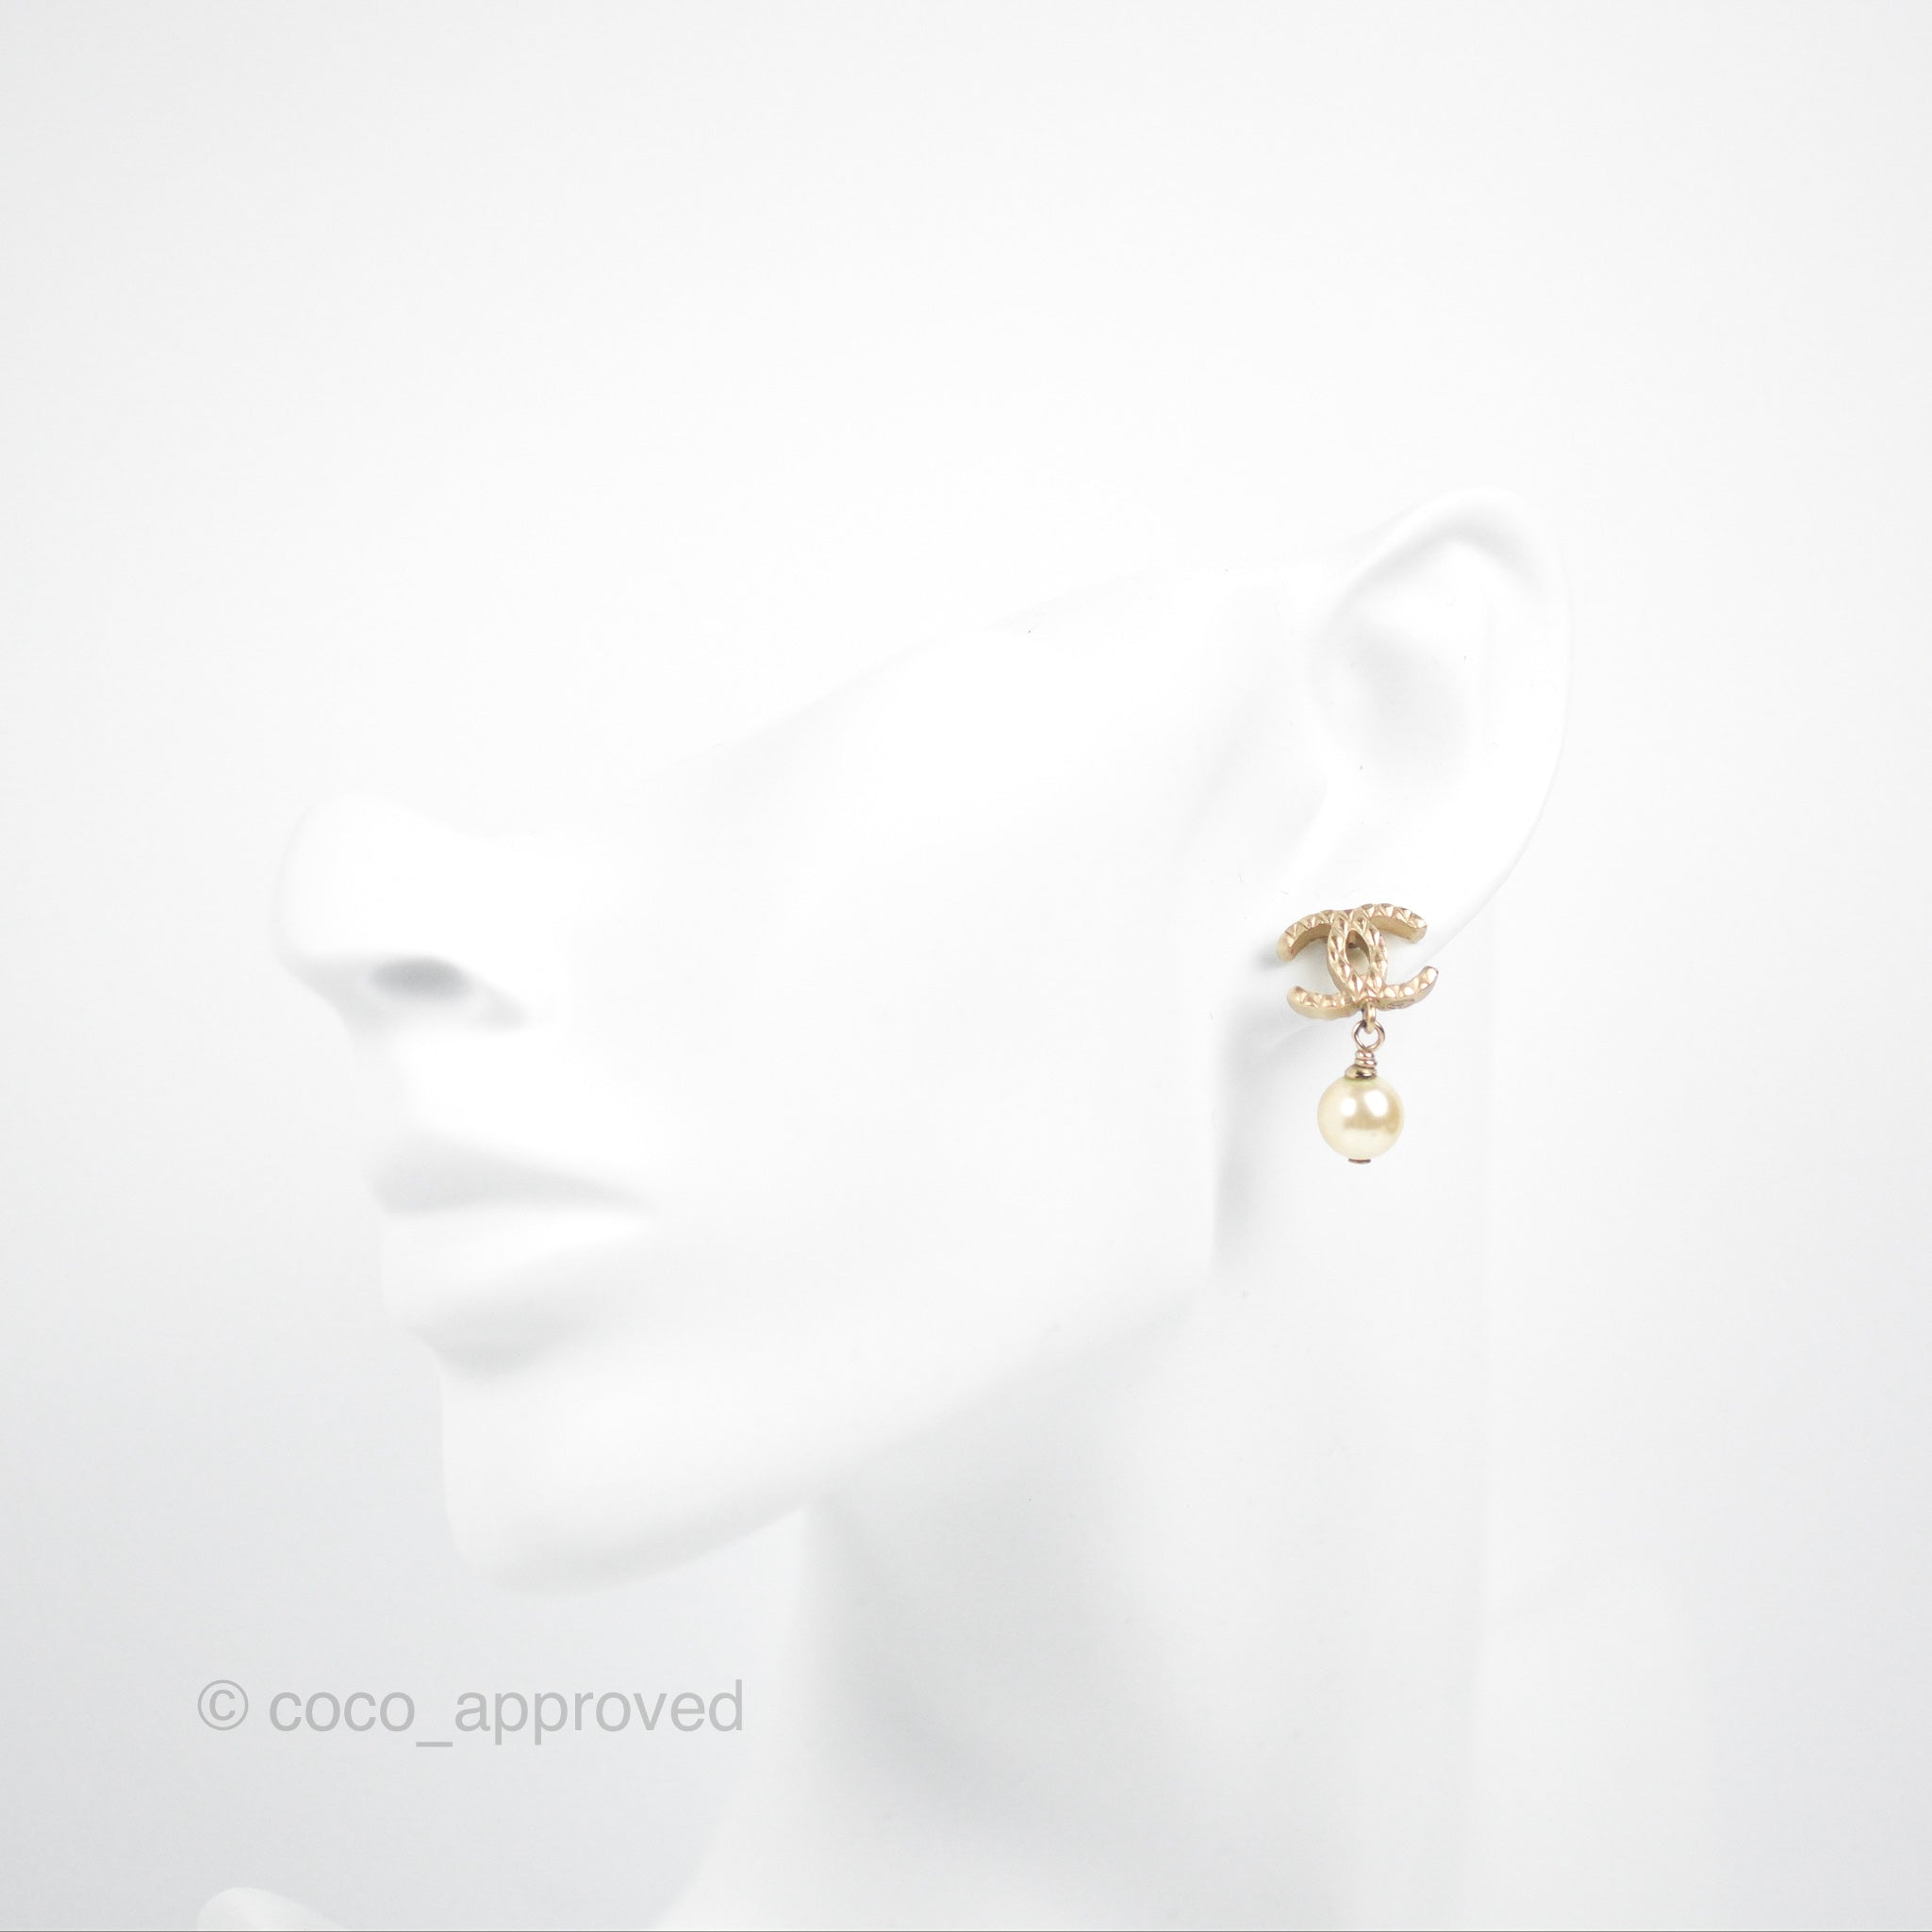 chanel earrings pearl stud set